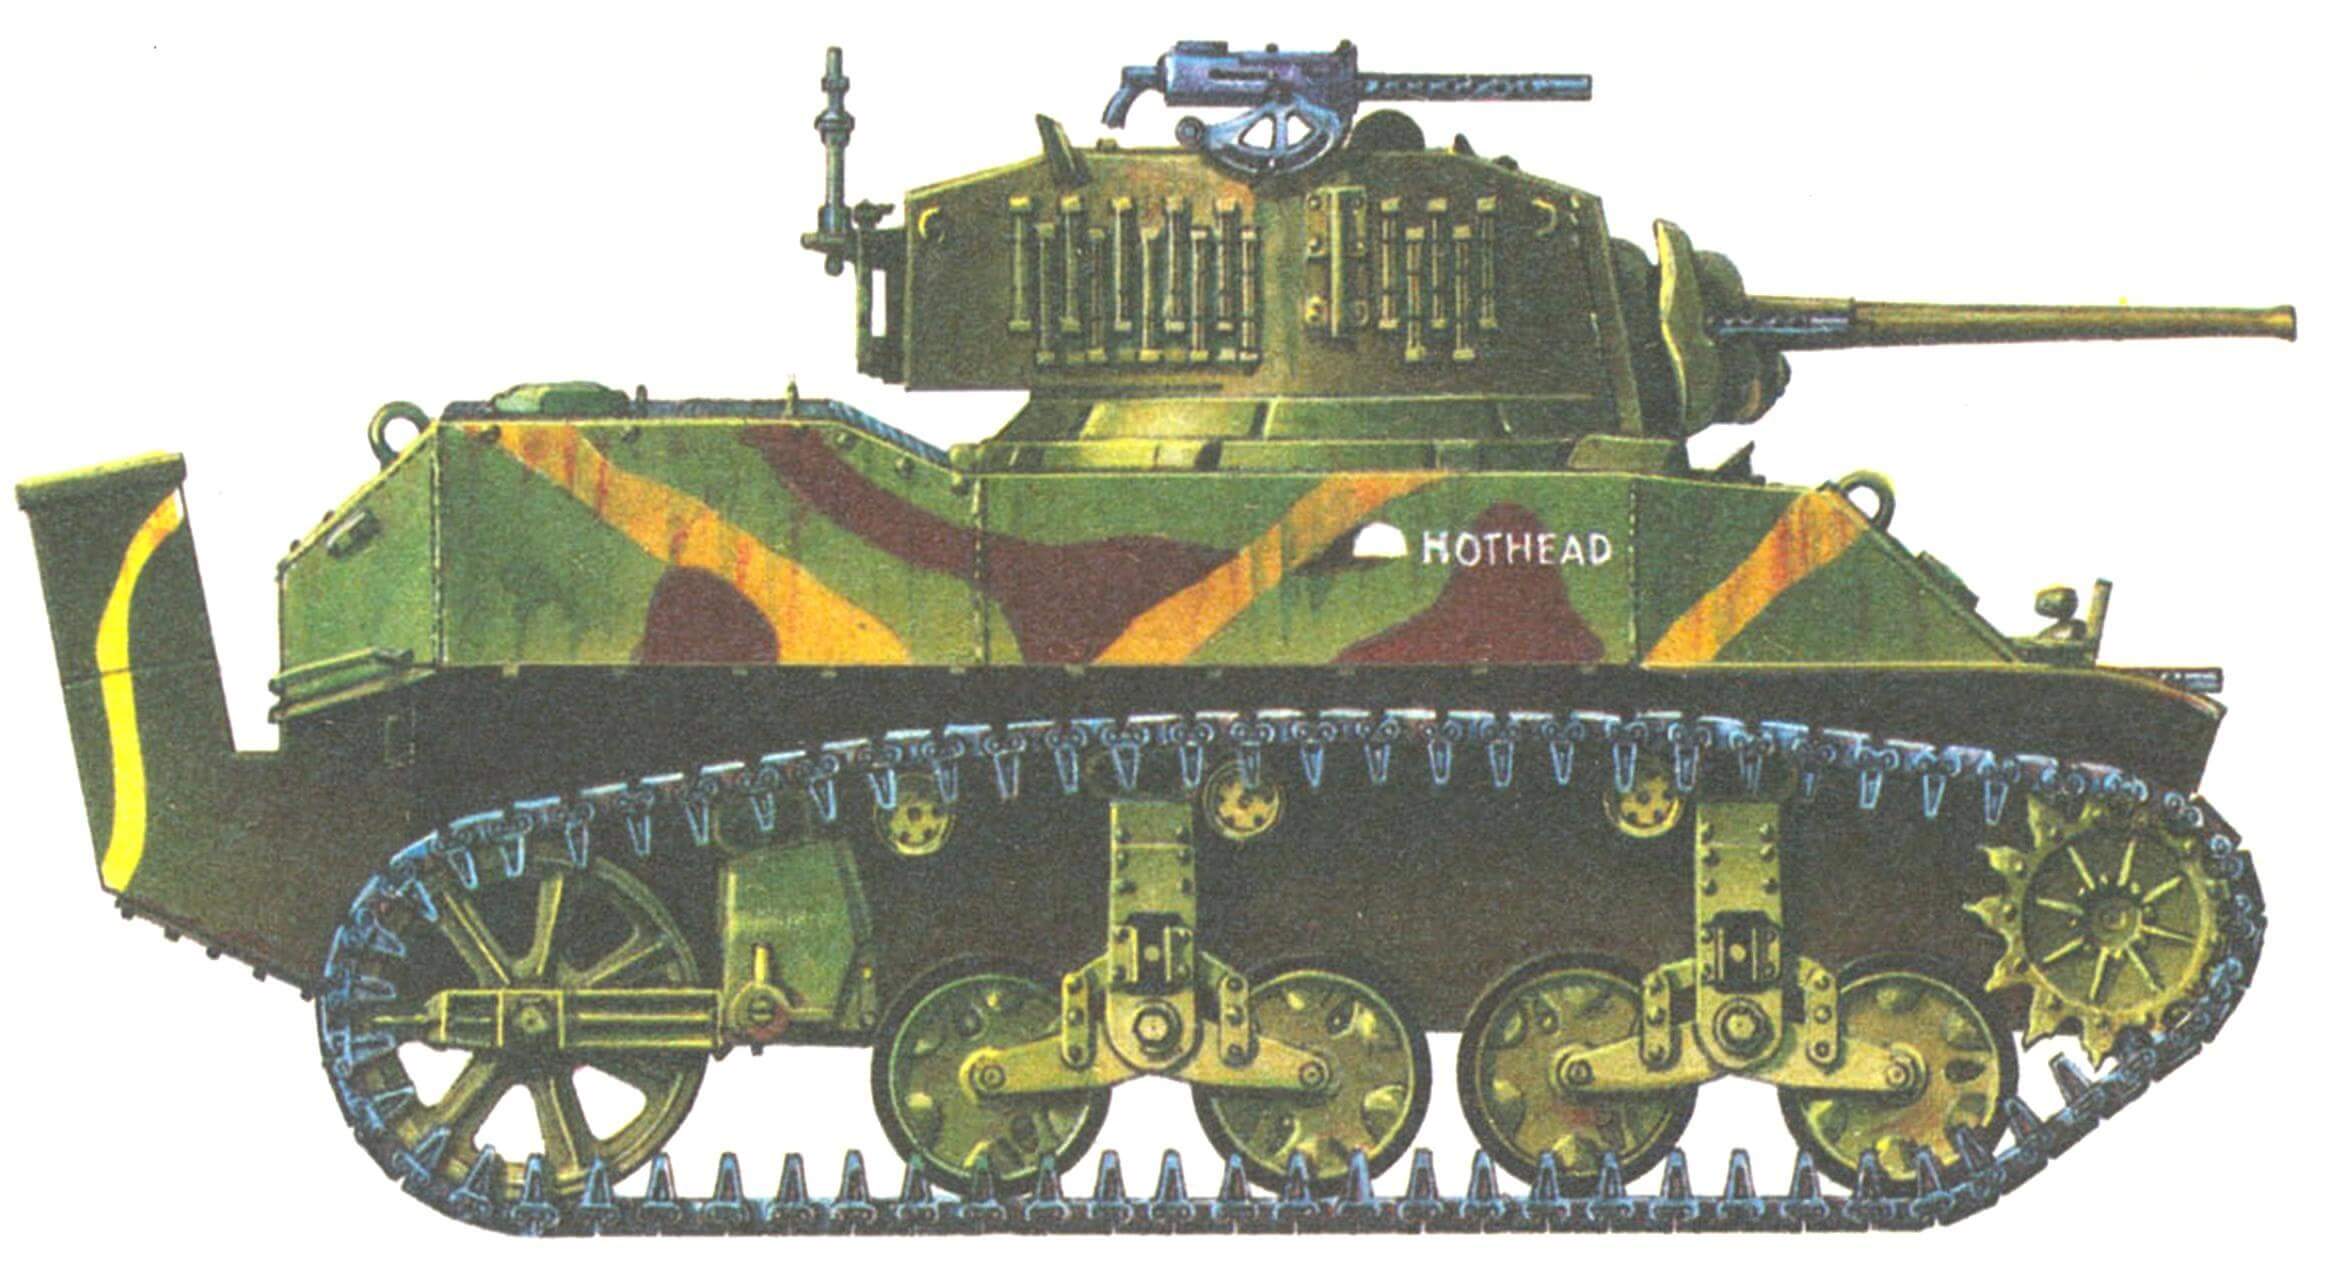 Легкий танк М5А1. 4-й танковый батальон морской пехоты США. Атолл Рой-Намюр, 1 февраля 1944 года. Кожух на корме корпуса предназначен для отвода выхлопных газов.